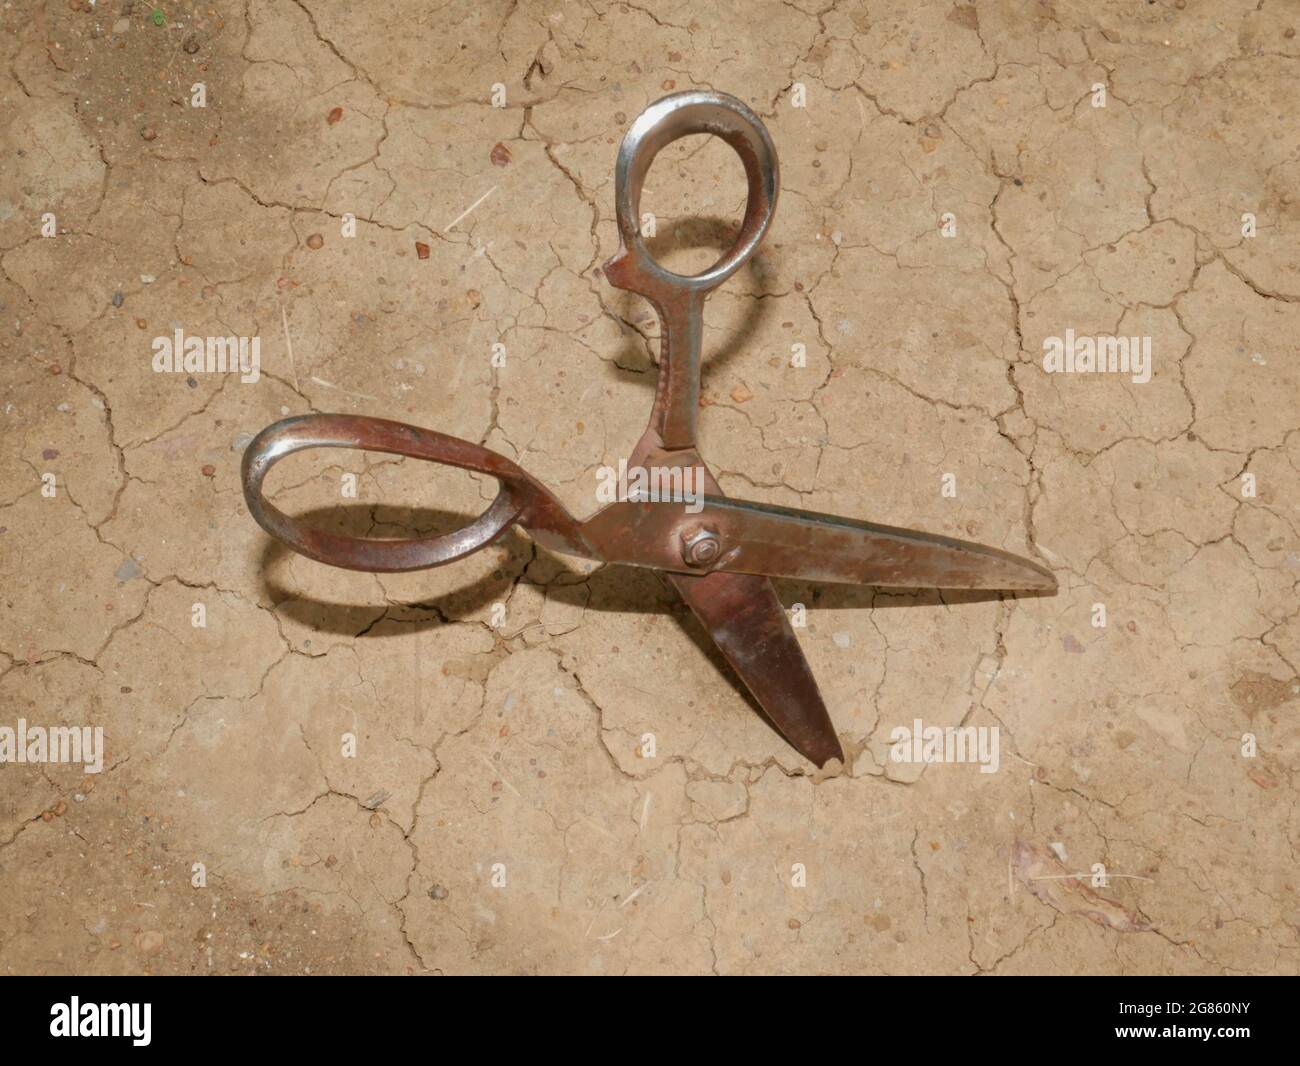 Ciseau de métal de fer présenté sur terre de sol, concept d'image d'outils agricoles. Banque D'Images